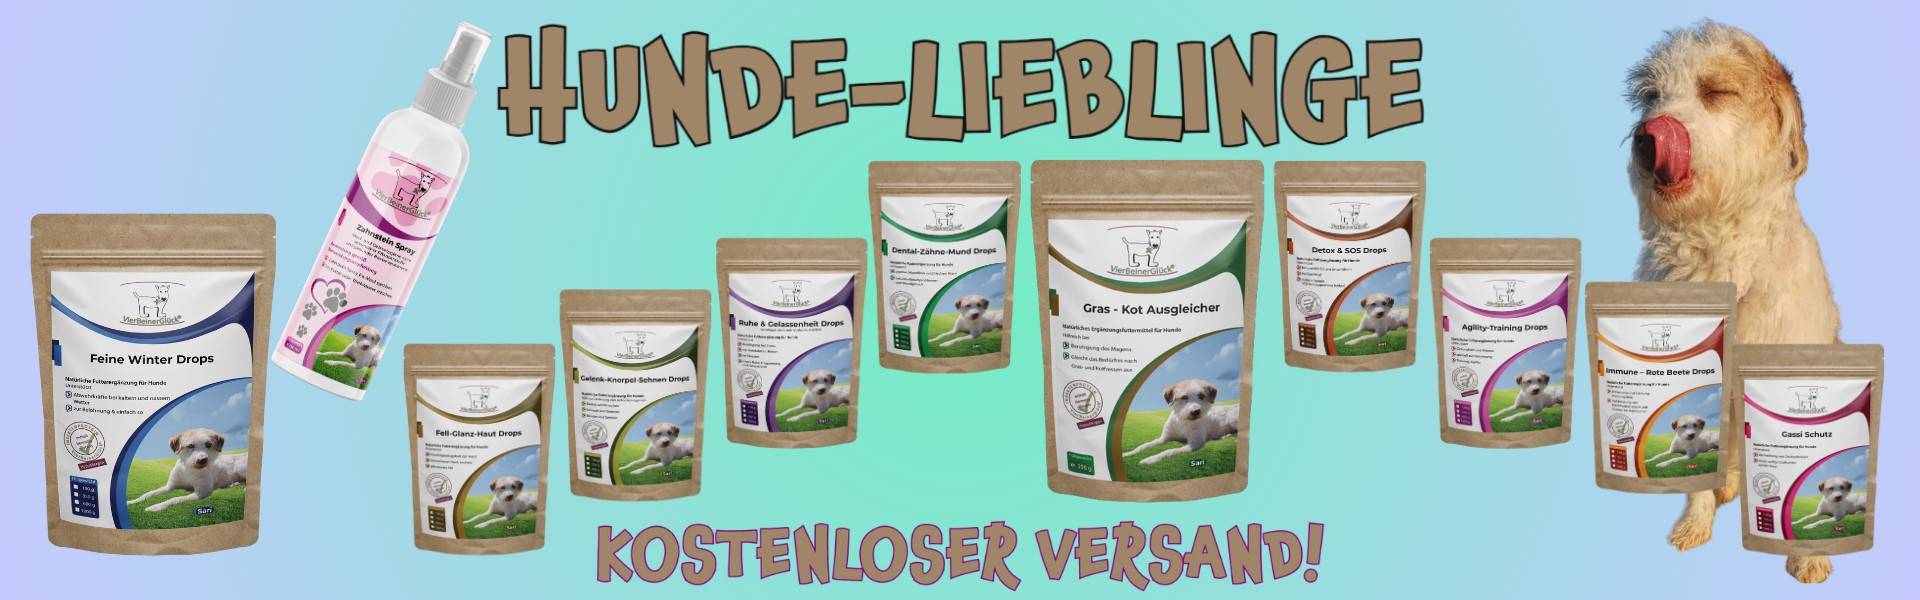 Banner Image alle Produkte "Hunde-Lieblinge"